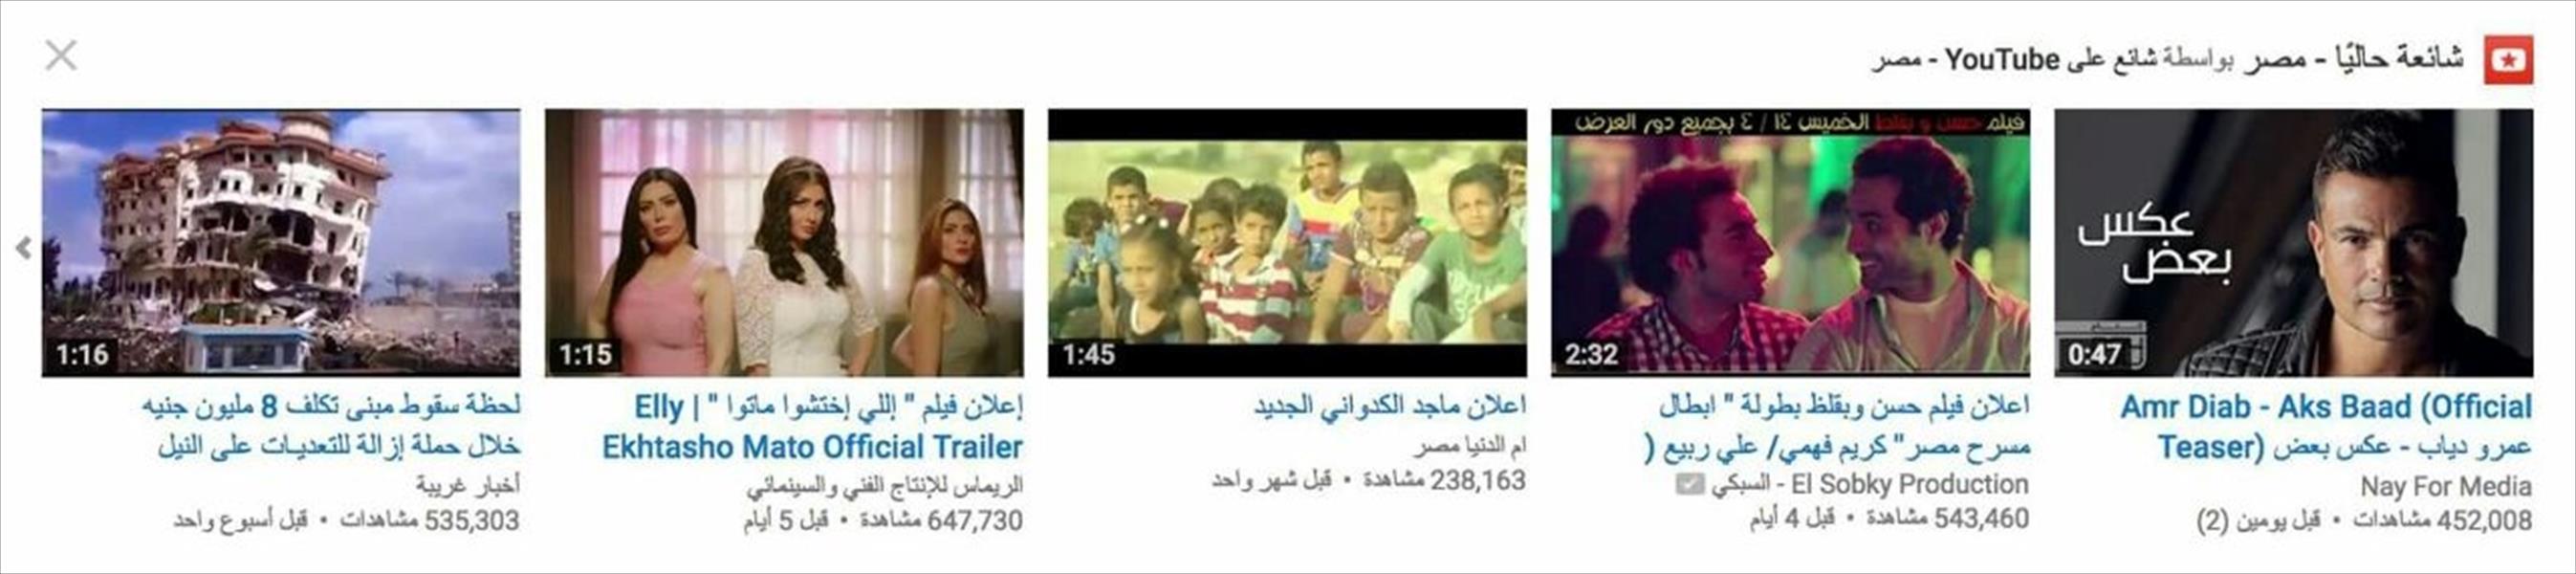 «اللي اختشوا ماتوا» الأكثر مشاهدة على «يوتيوب»